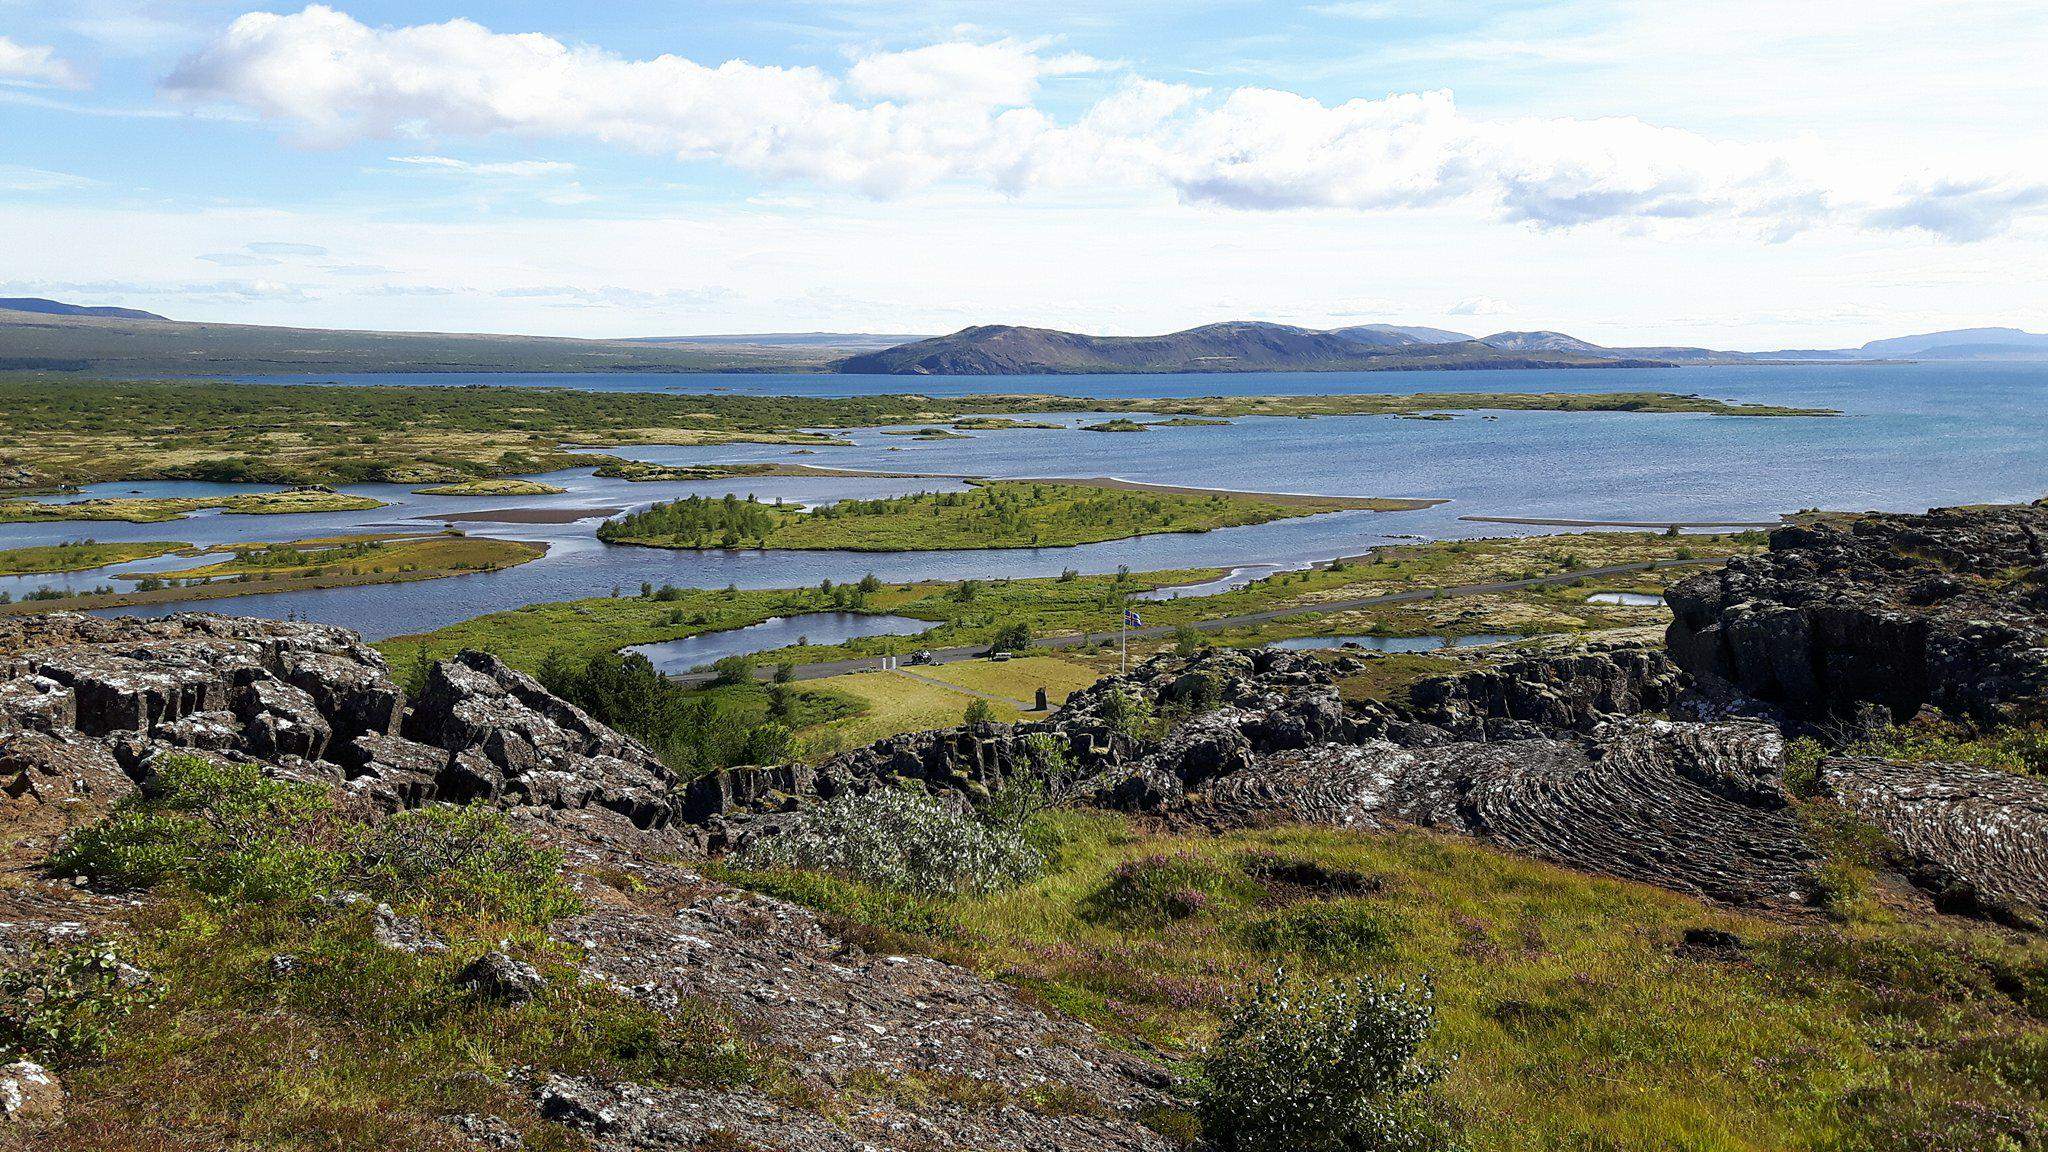 Abenteuer ohne Stress: Entdecken Sie die Naturperlen rund um Reykjavik!